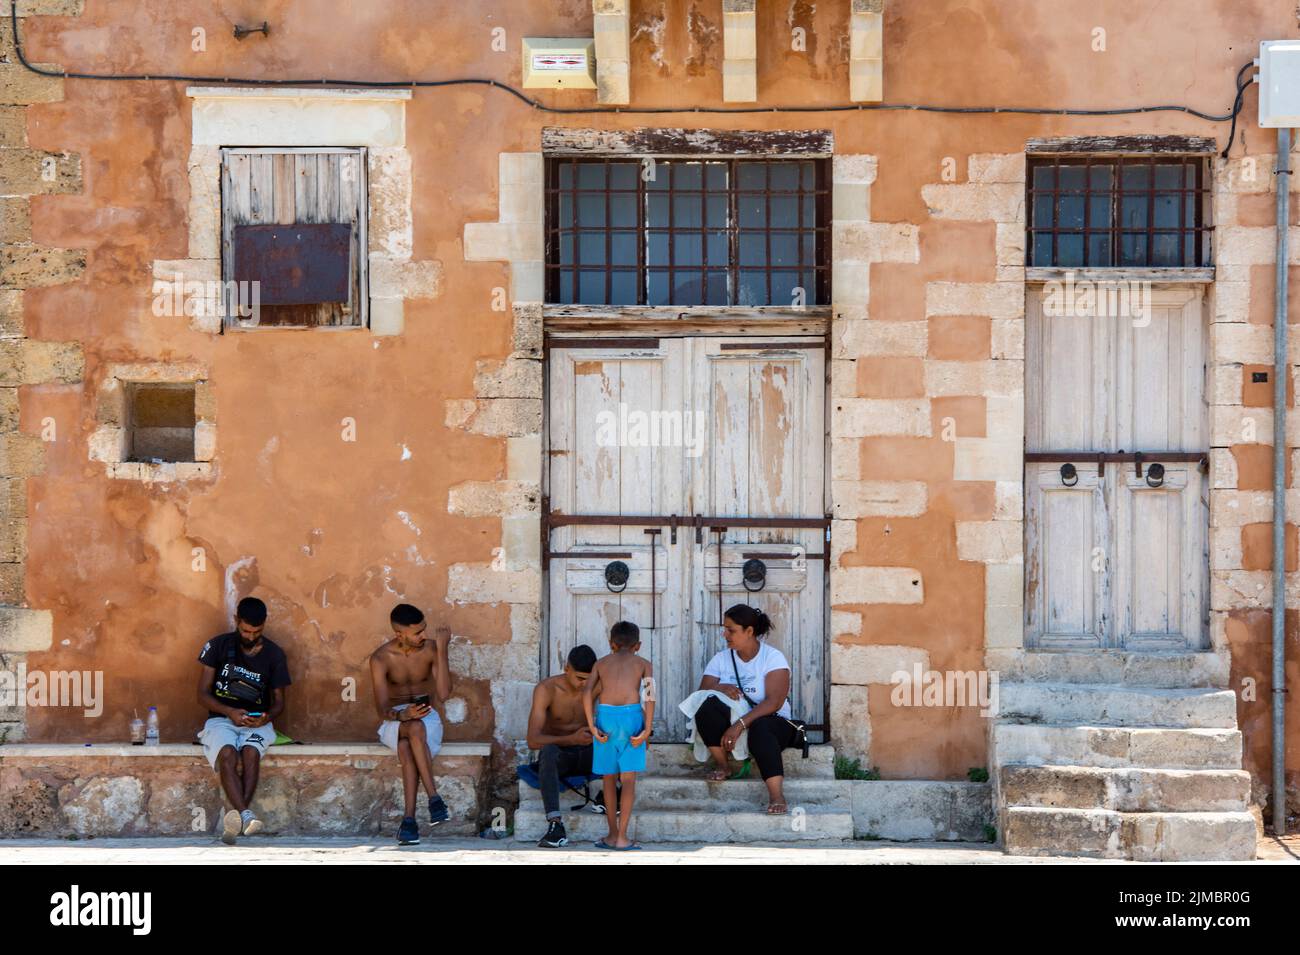 famiglie locali che ombreggiano dal sole di mezzogiorno accanto a un vecchio edificio greco tradizionale sull'isola di creta, nella città di chania. Foto Stock